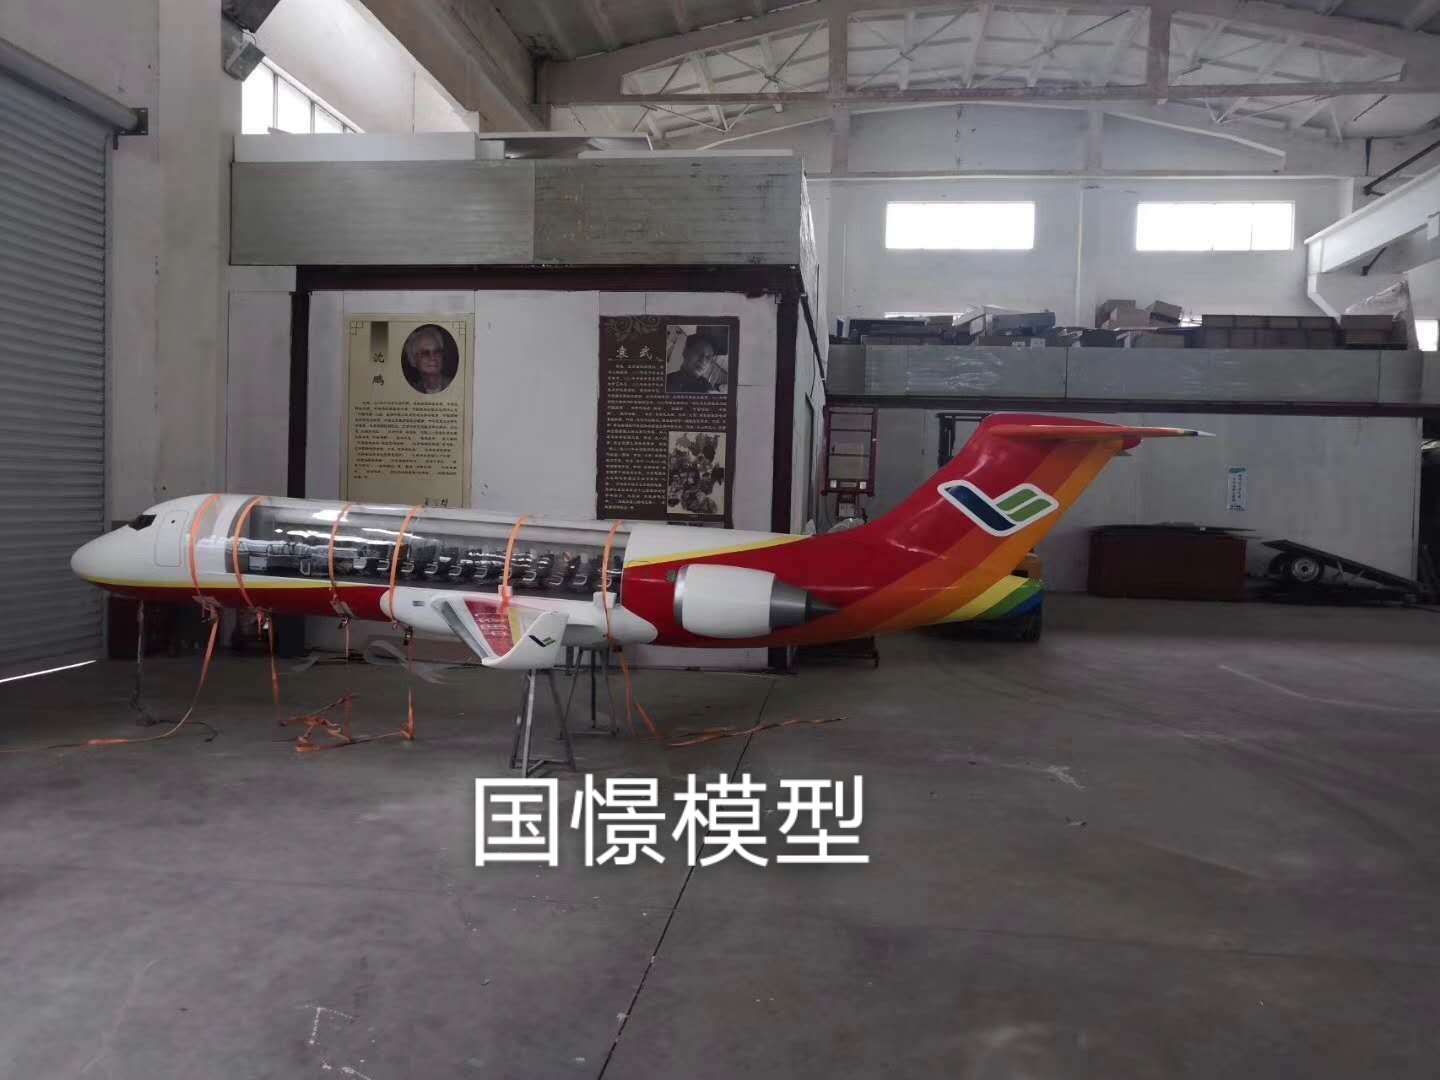 宣汉县飞机模型